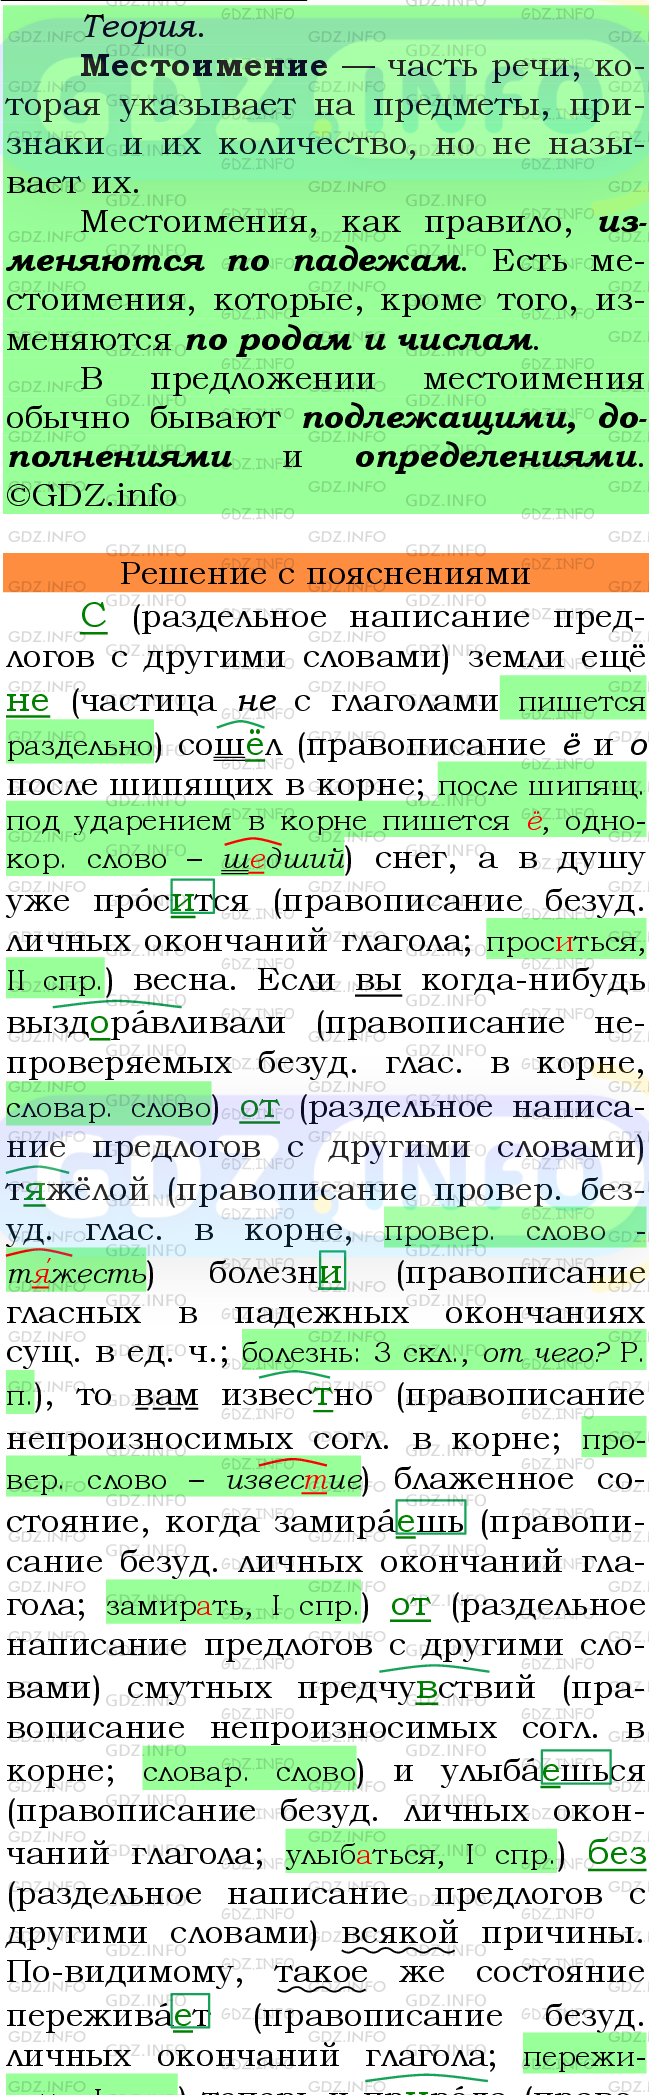 Фото подробного решения: Номер №553 из ГДЗ по Русскому языку 6 класс: Ладыженская Т.А.